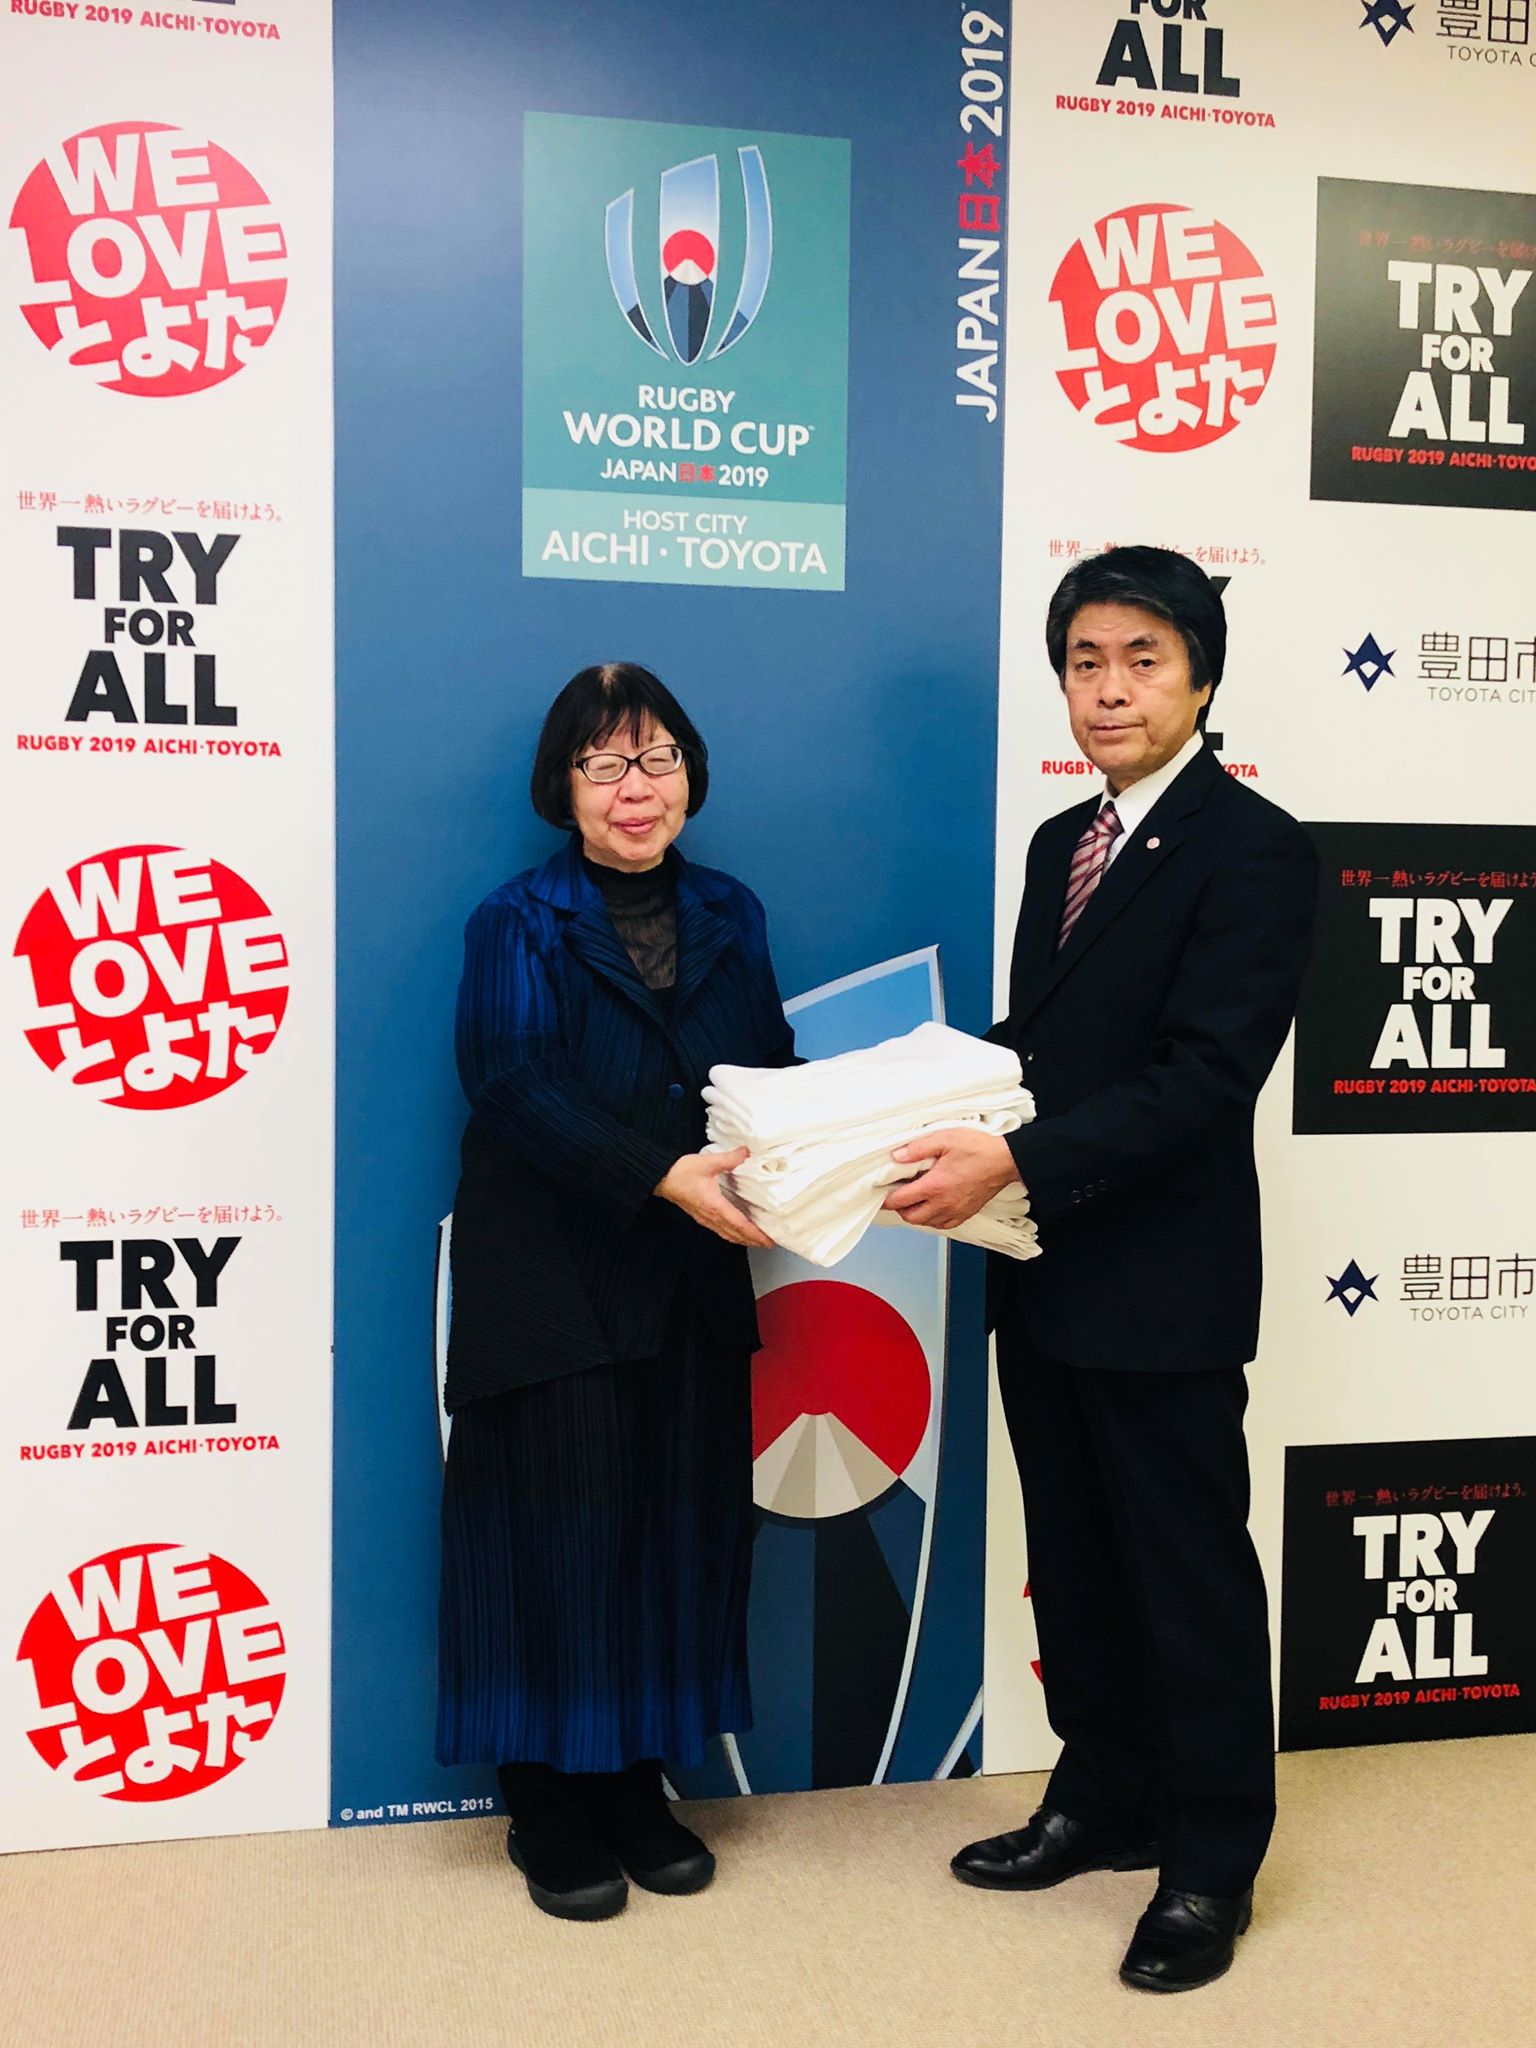 愛知県豊田市長が世界一大きな絵2020に参加表明頂きました。